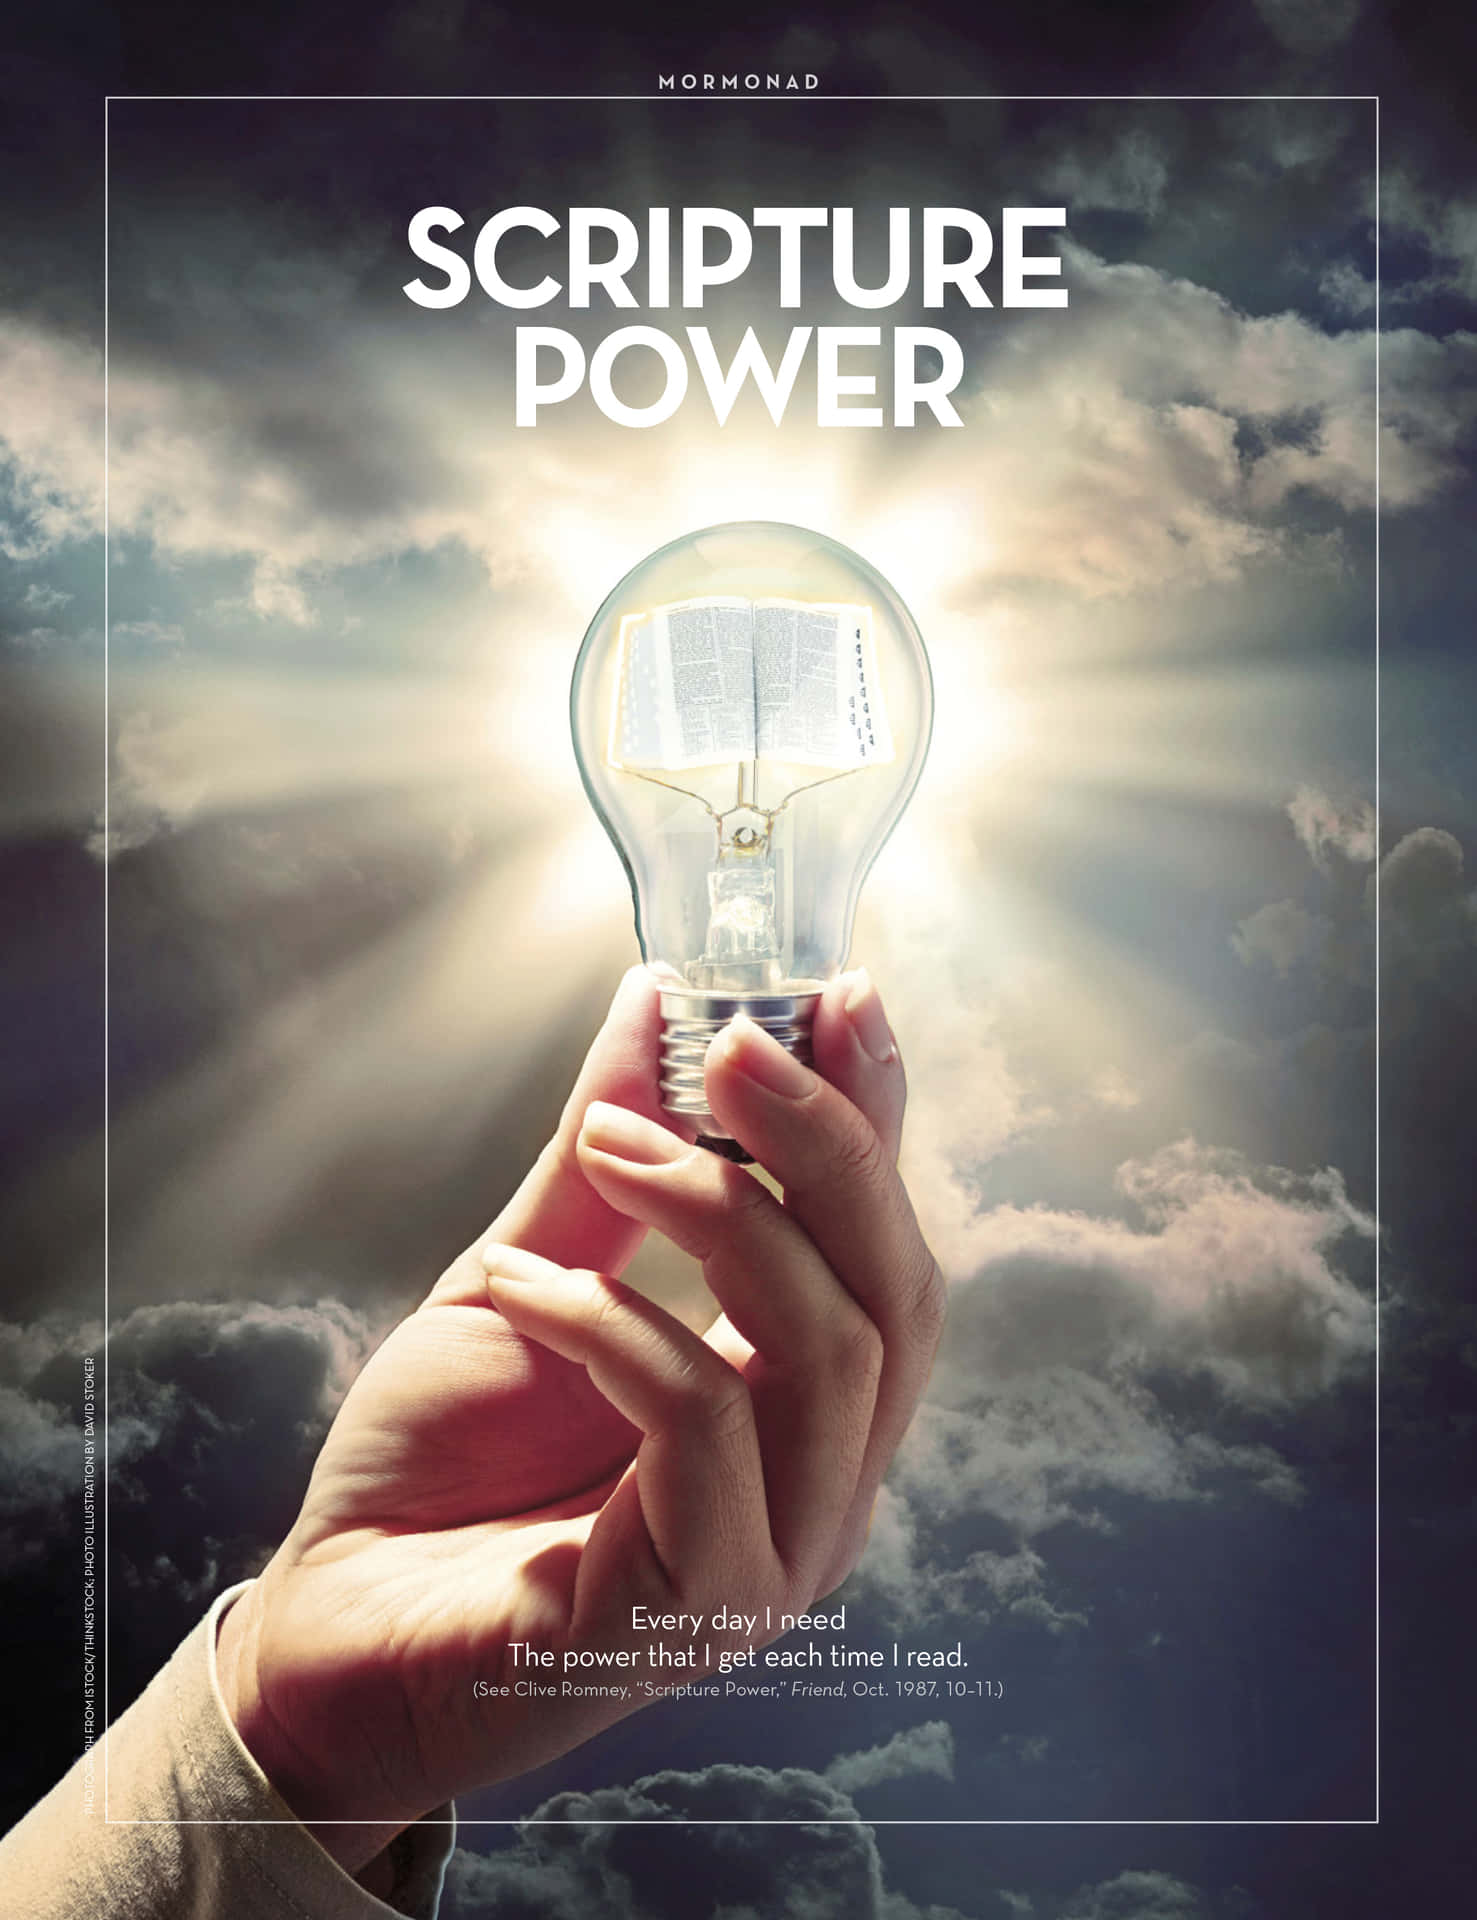 Scripture Power - A Hand Holding A Light Bulb